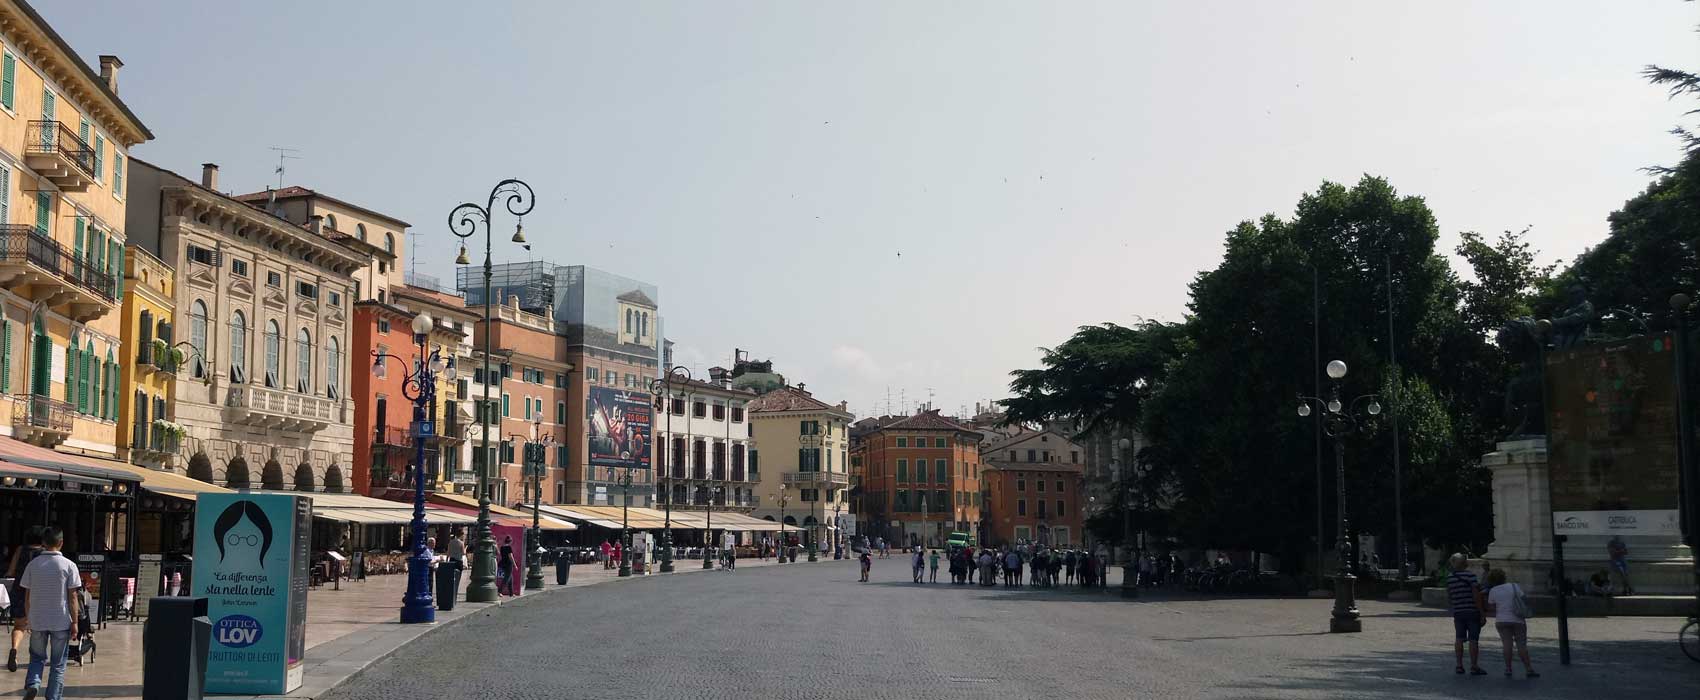 Die Piazza Bra mit ihren Restaurants und Cafes